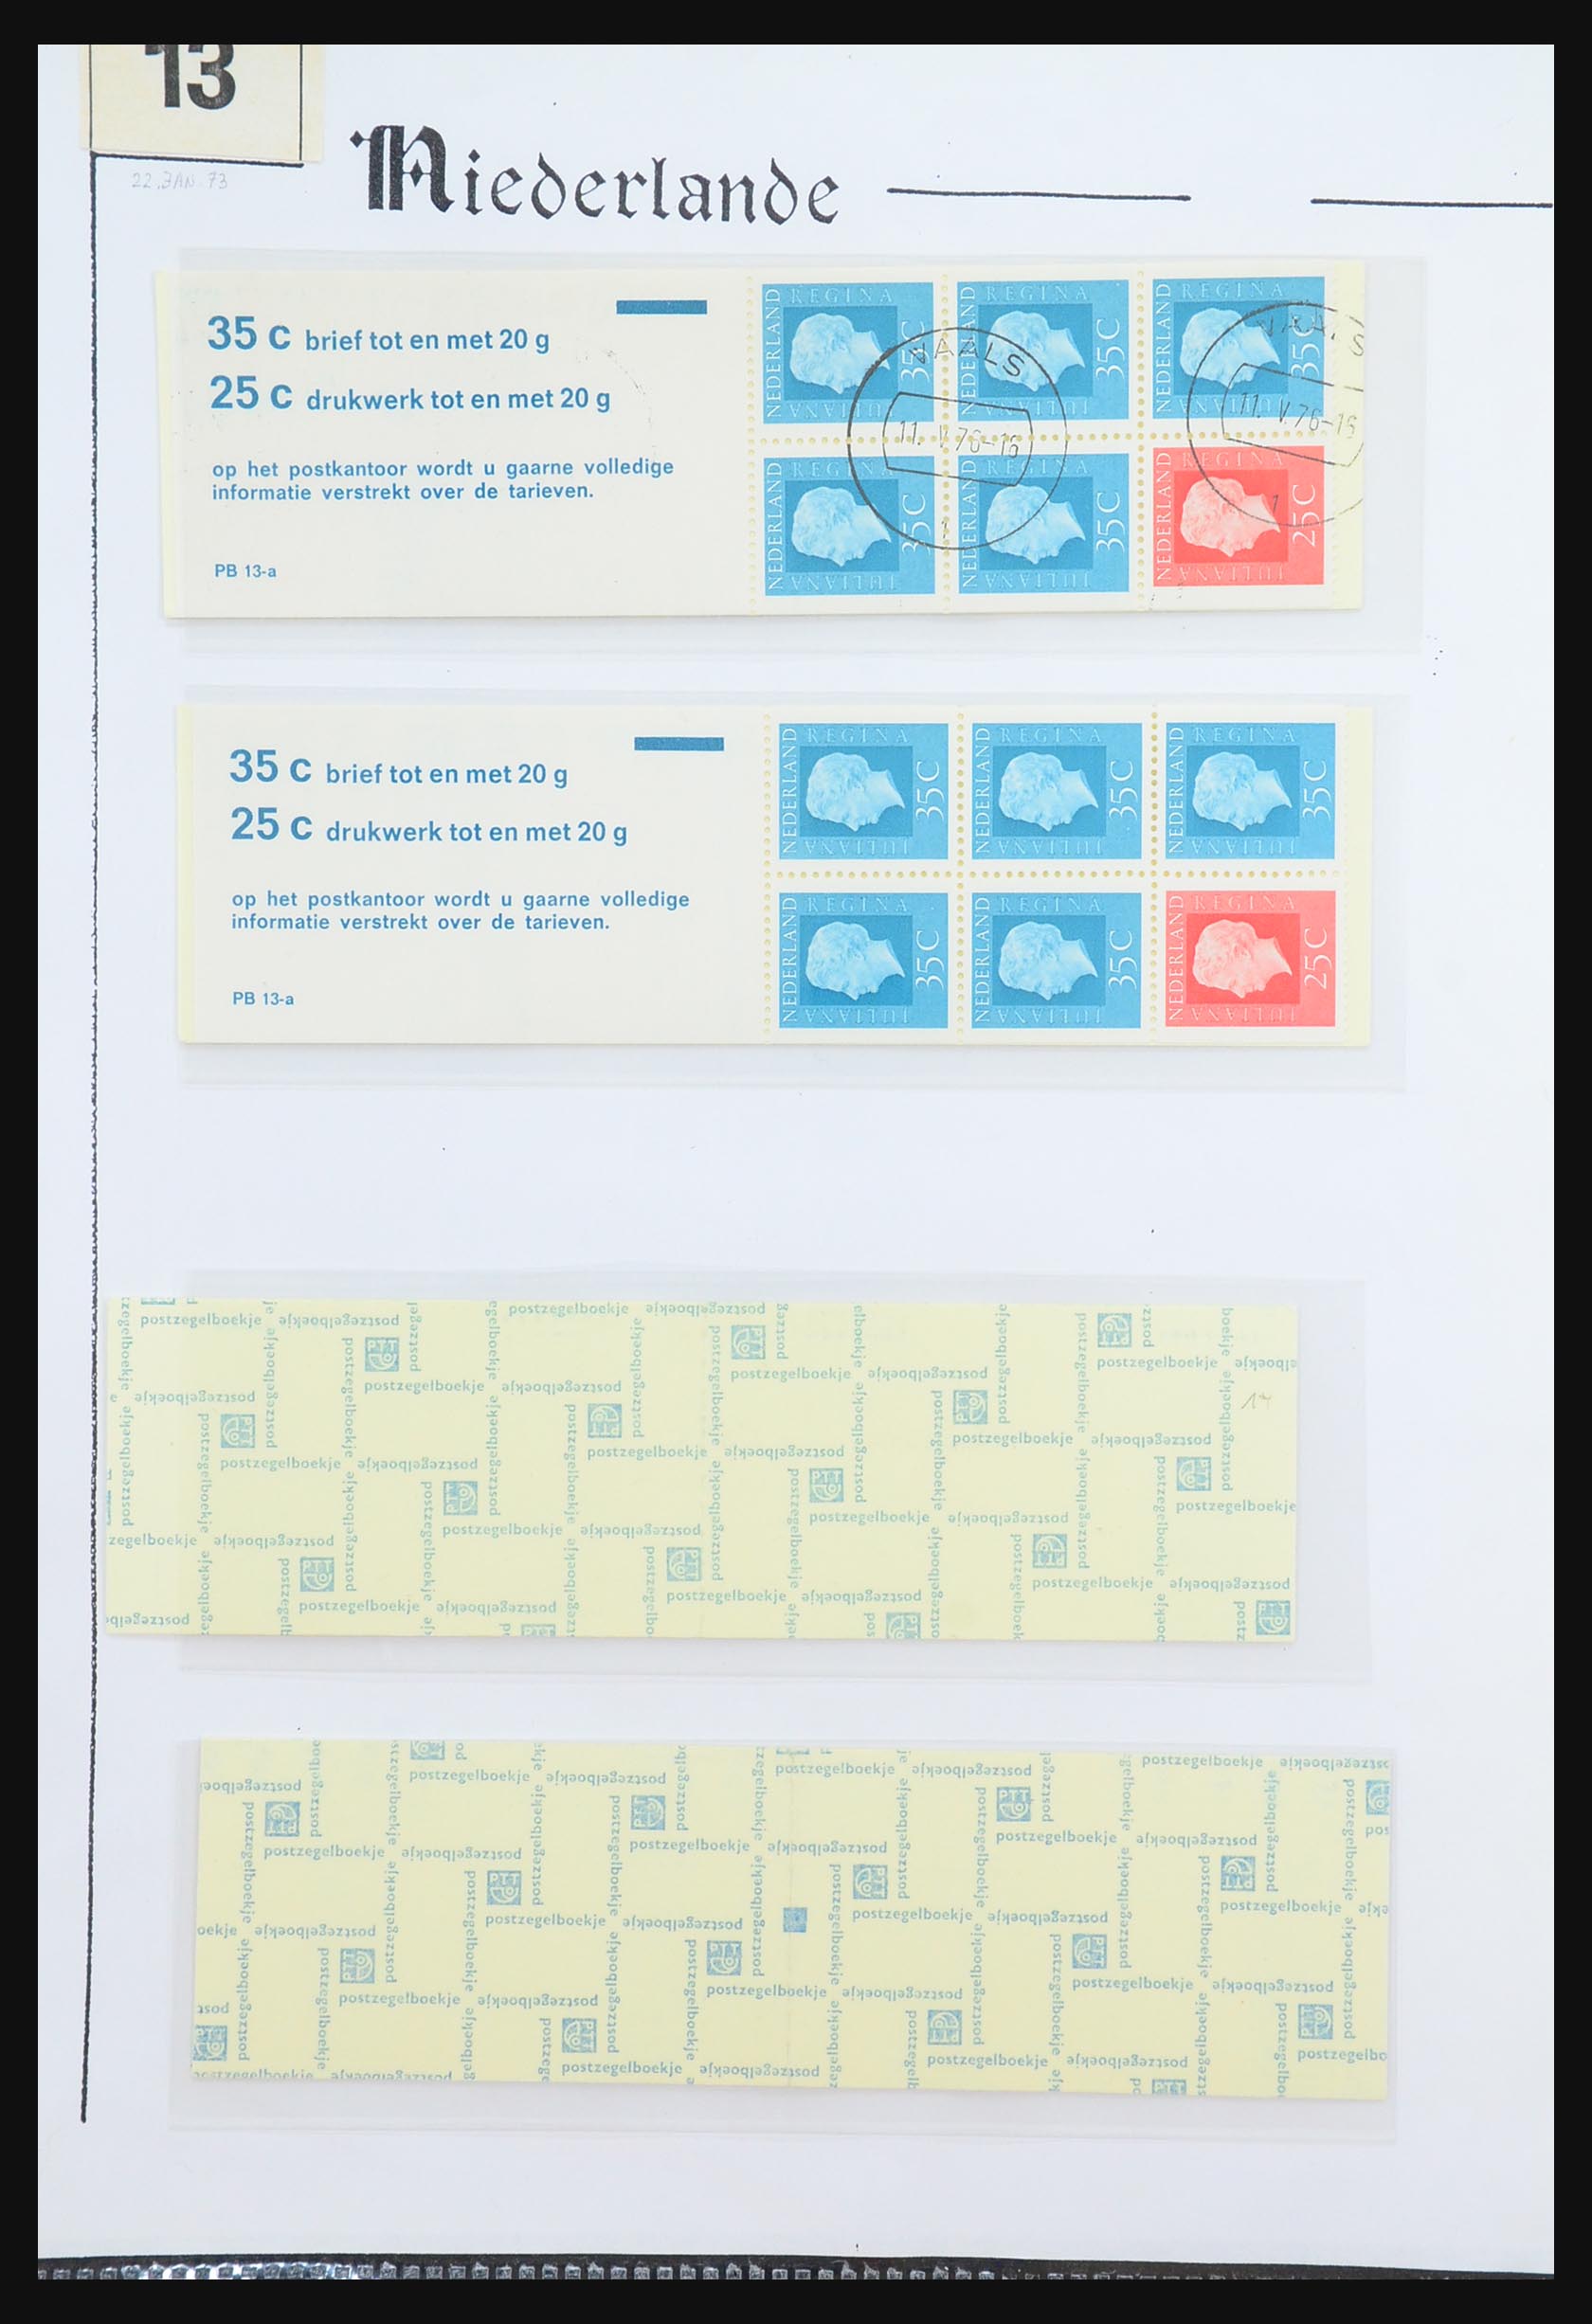 31311 050 - 31311 Netherlands stamp booklets 1964-1994.